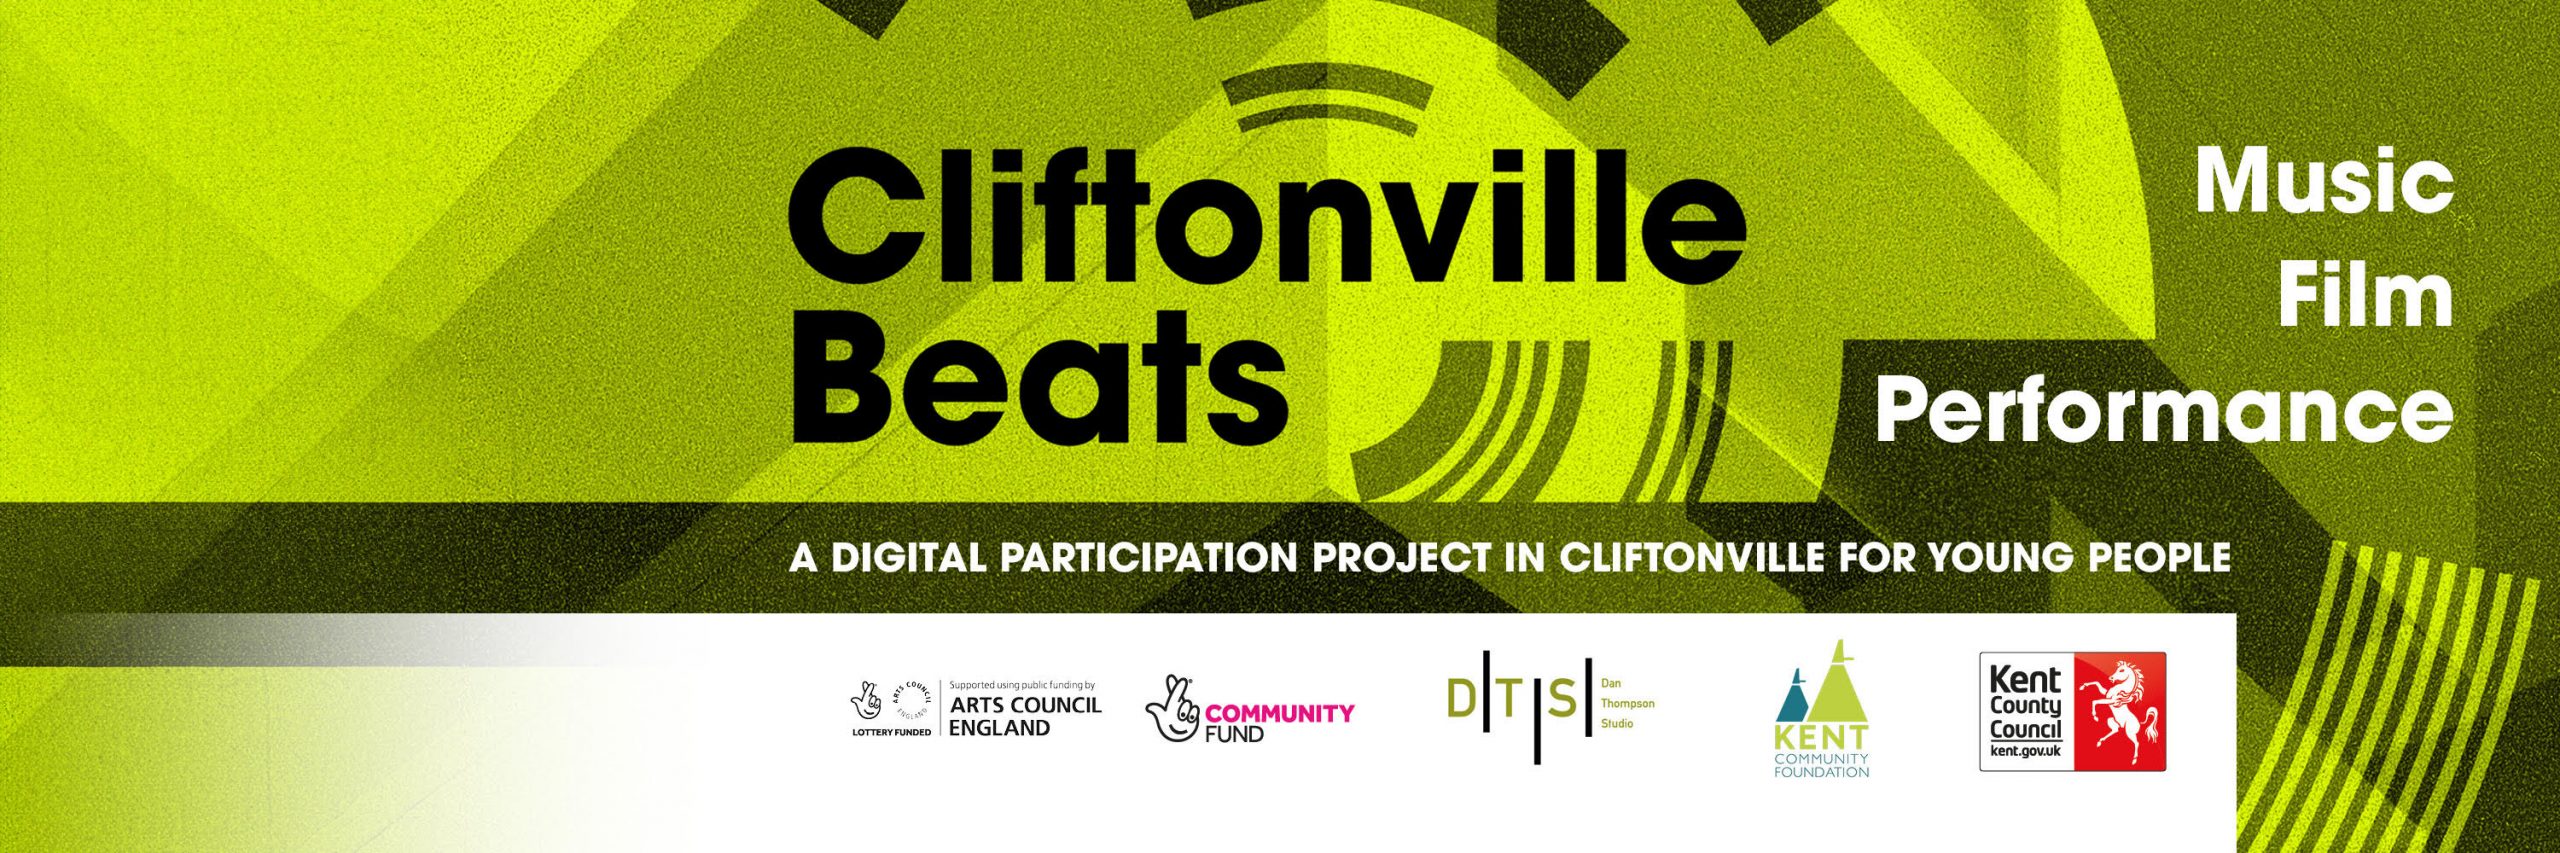 Cliftonville_Beats_Banner-3